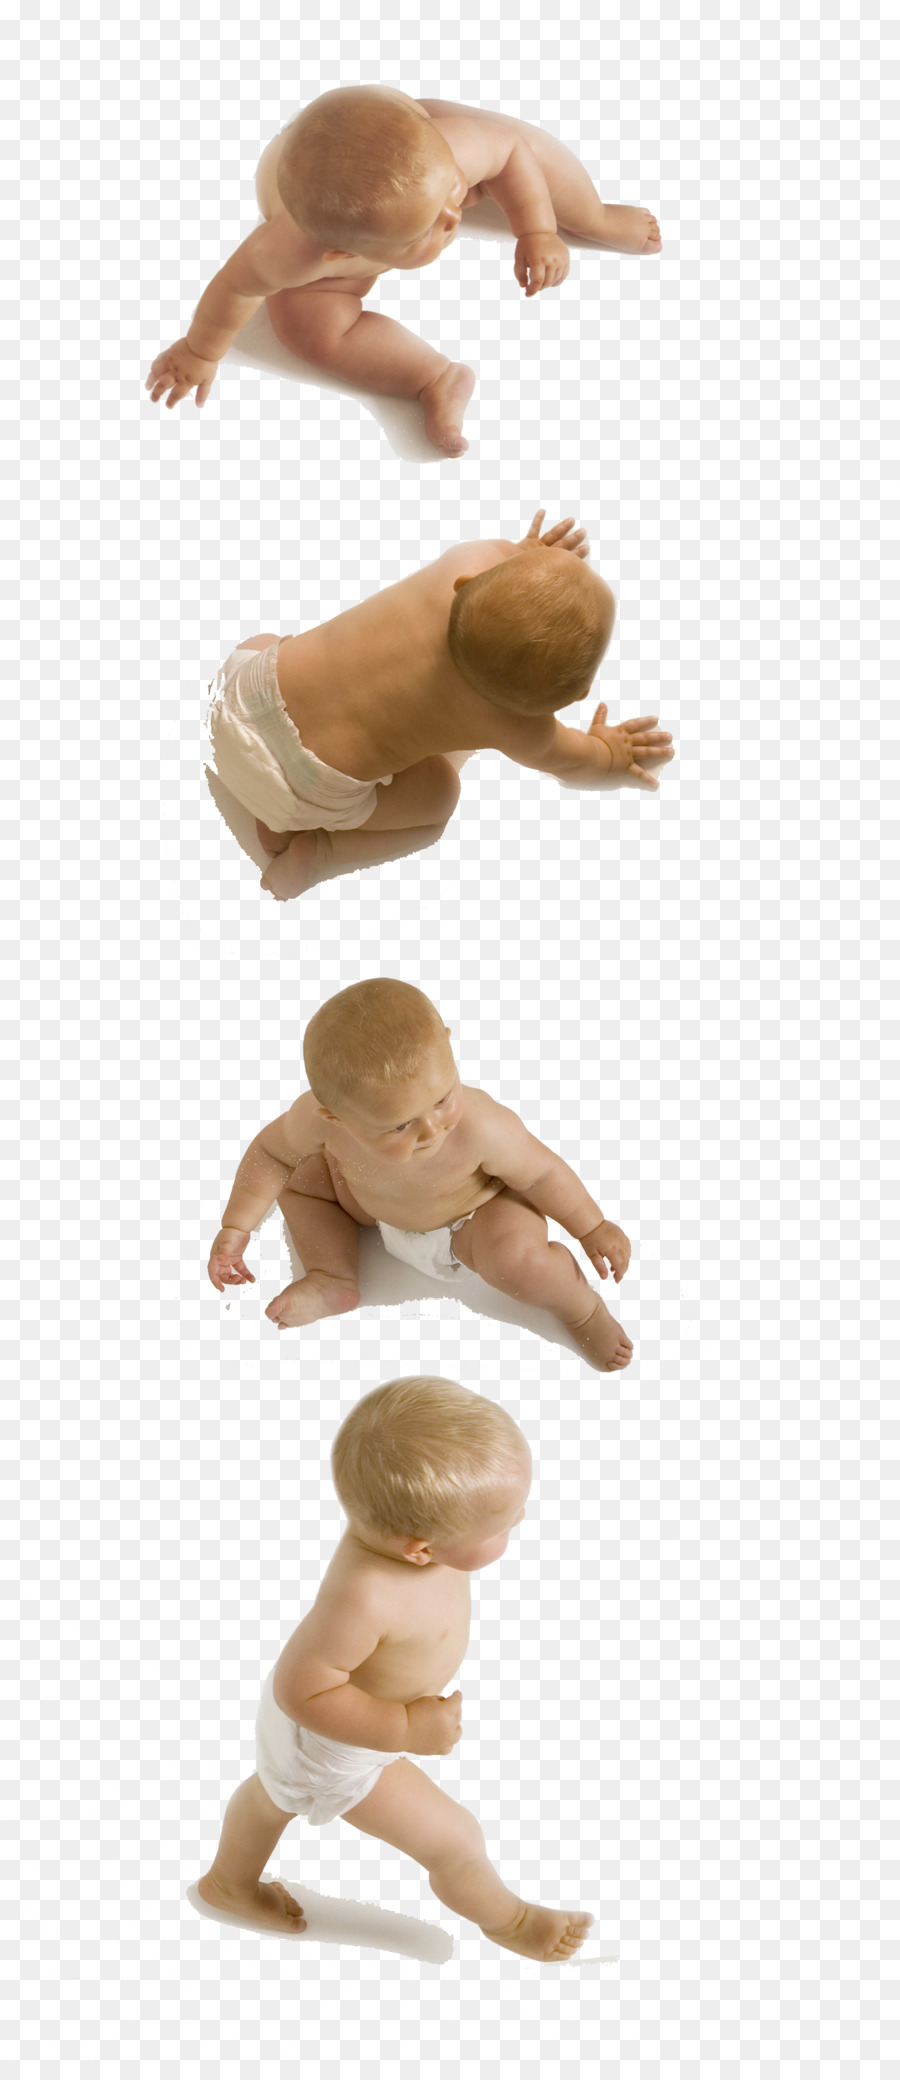 Baby-Zeichensprache Baby Kind Arm - andere